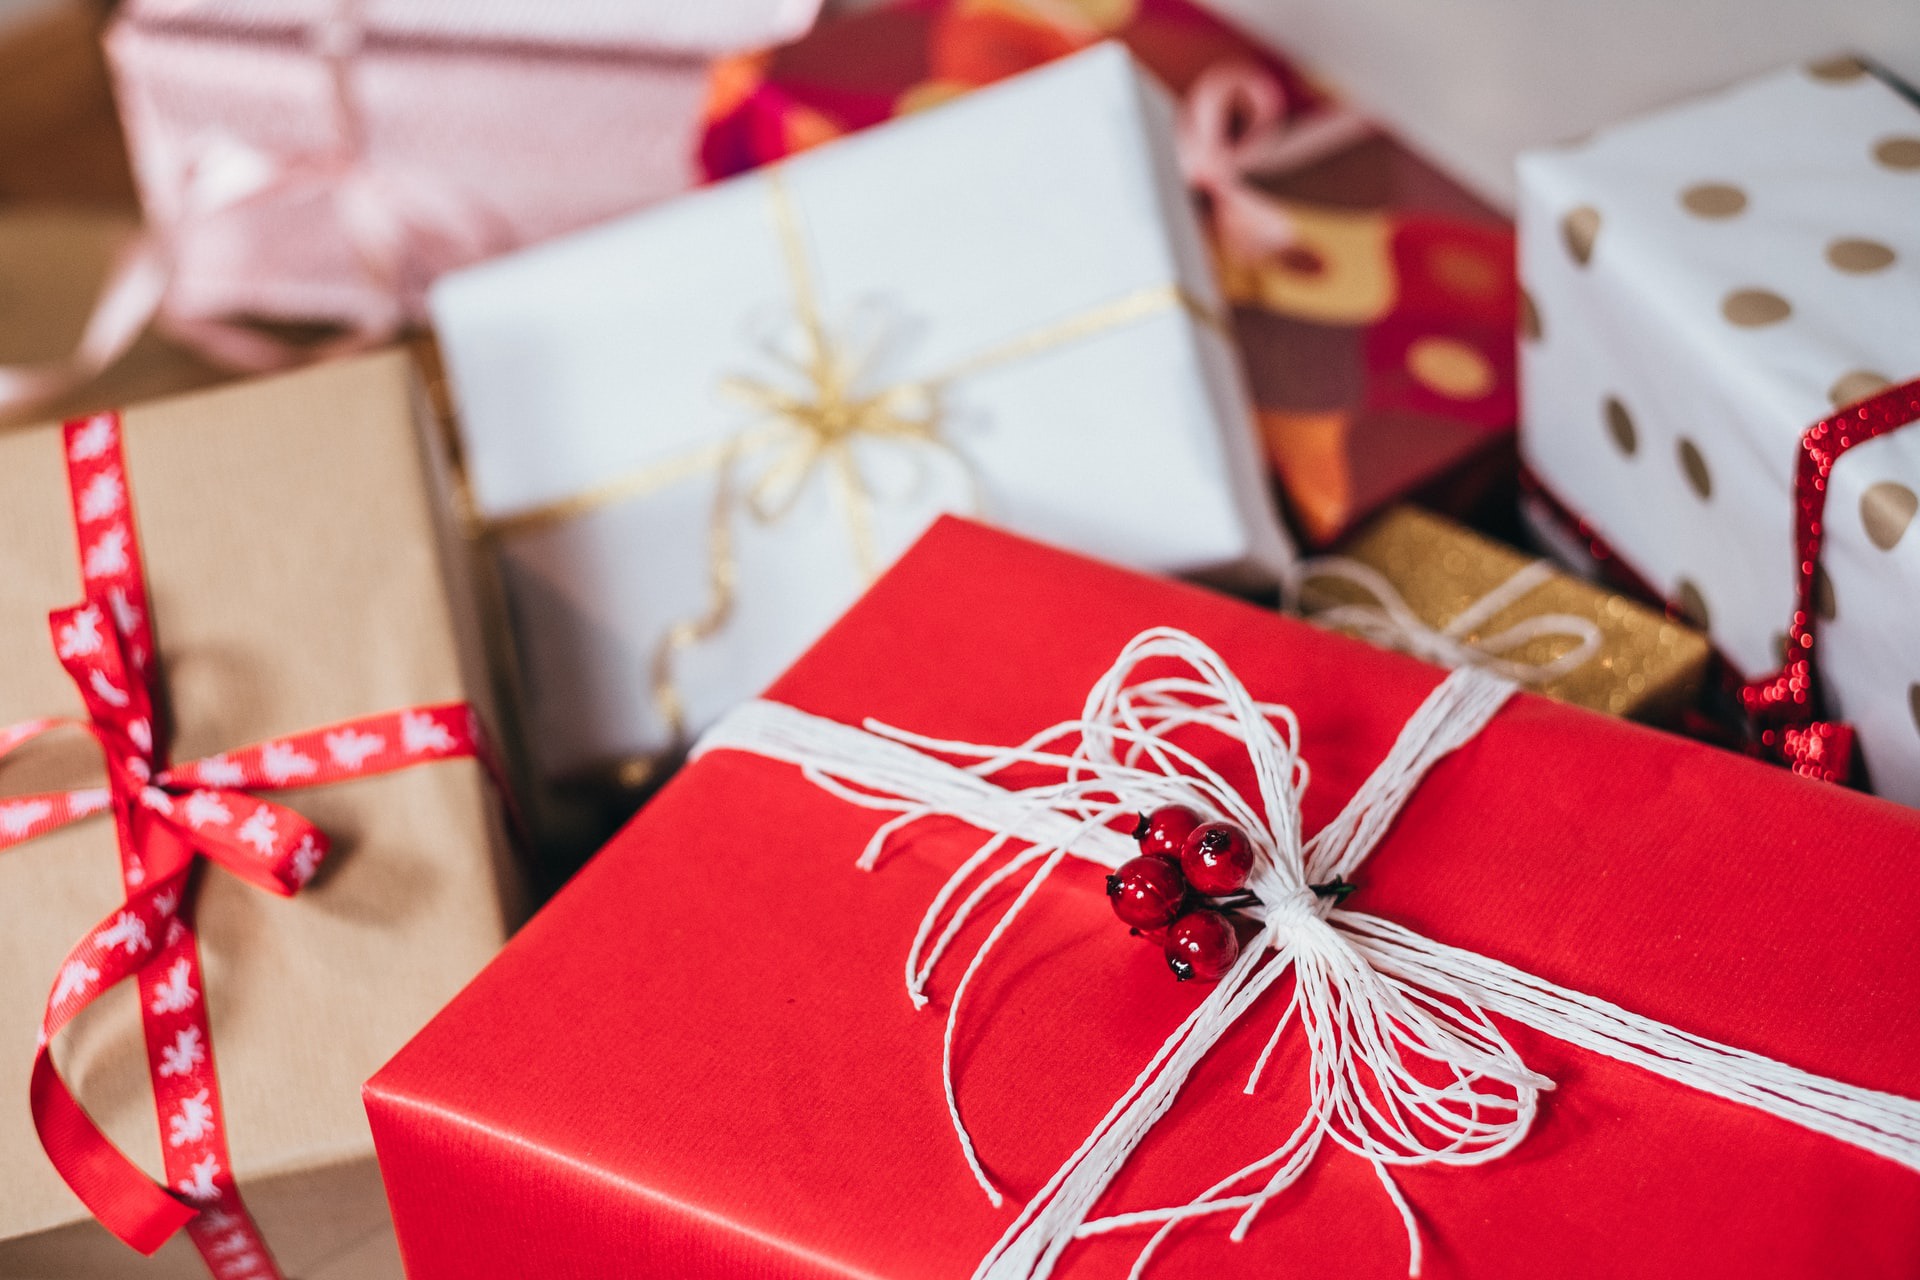 Tradycja obdarowywania się prezentami - dlaczego dajemy sobie prezenty na Święta?